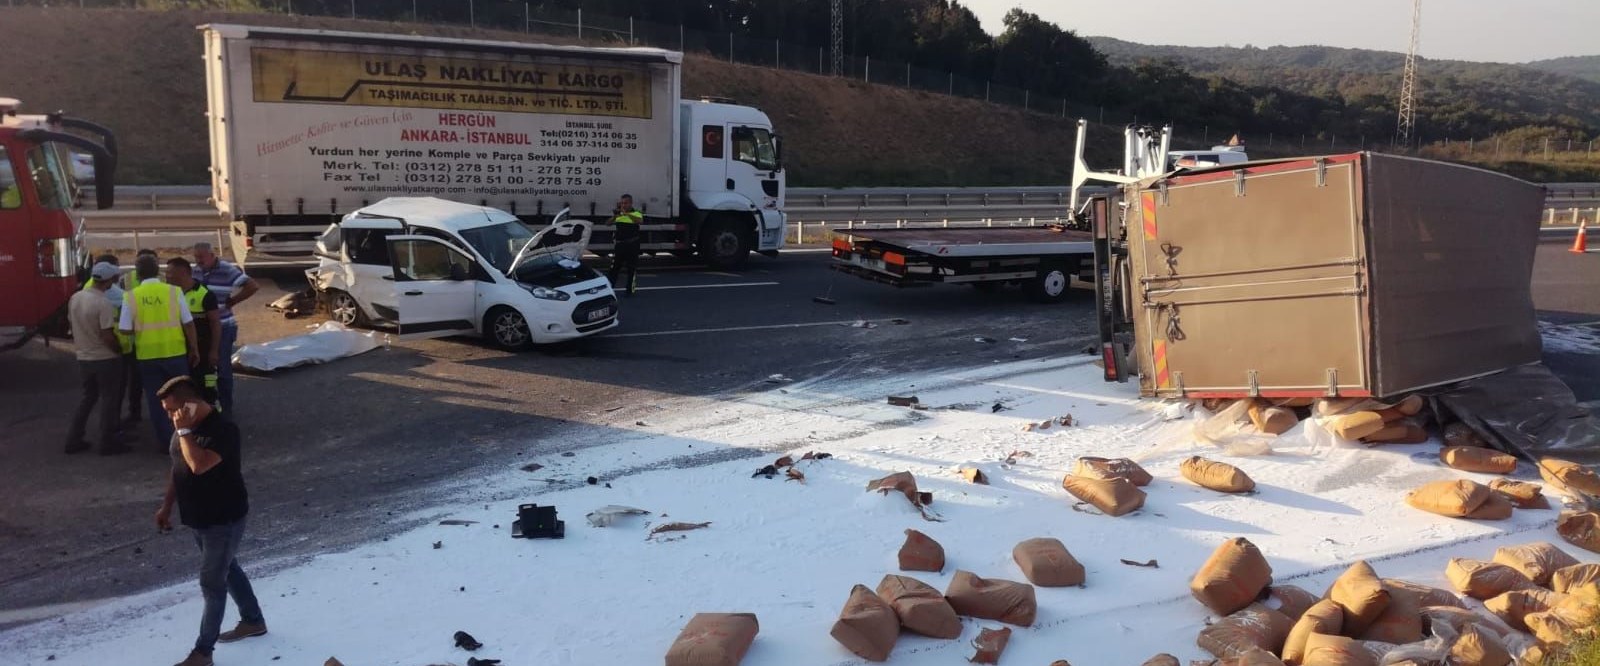 Kuzey Marmara Otoyolu’nda trafik kazası: 1 ölü, 2 yaralı